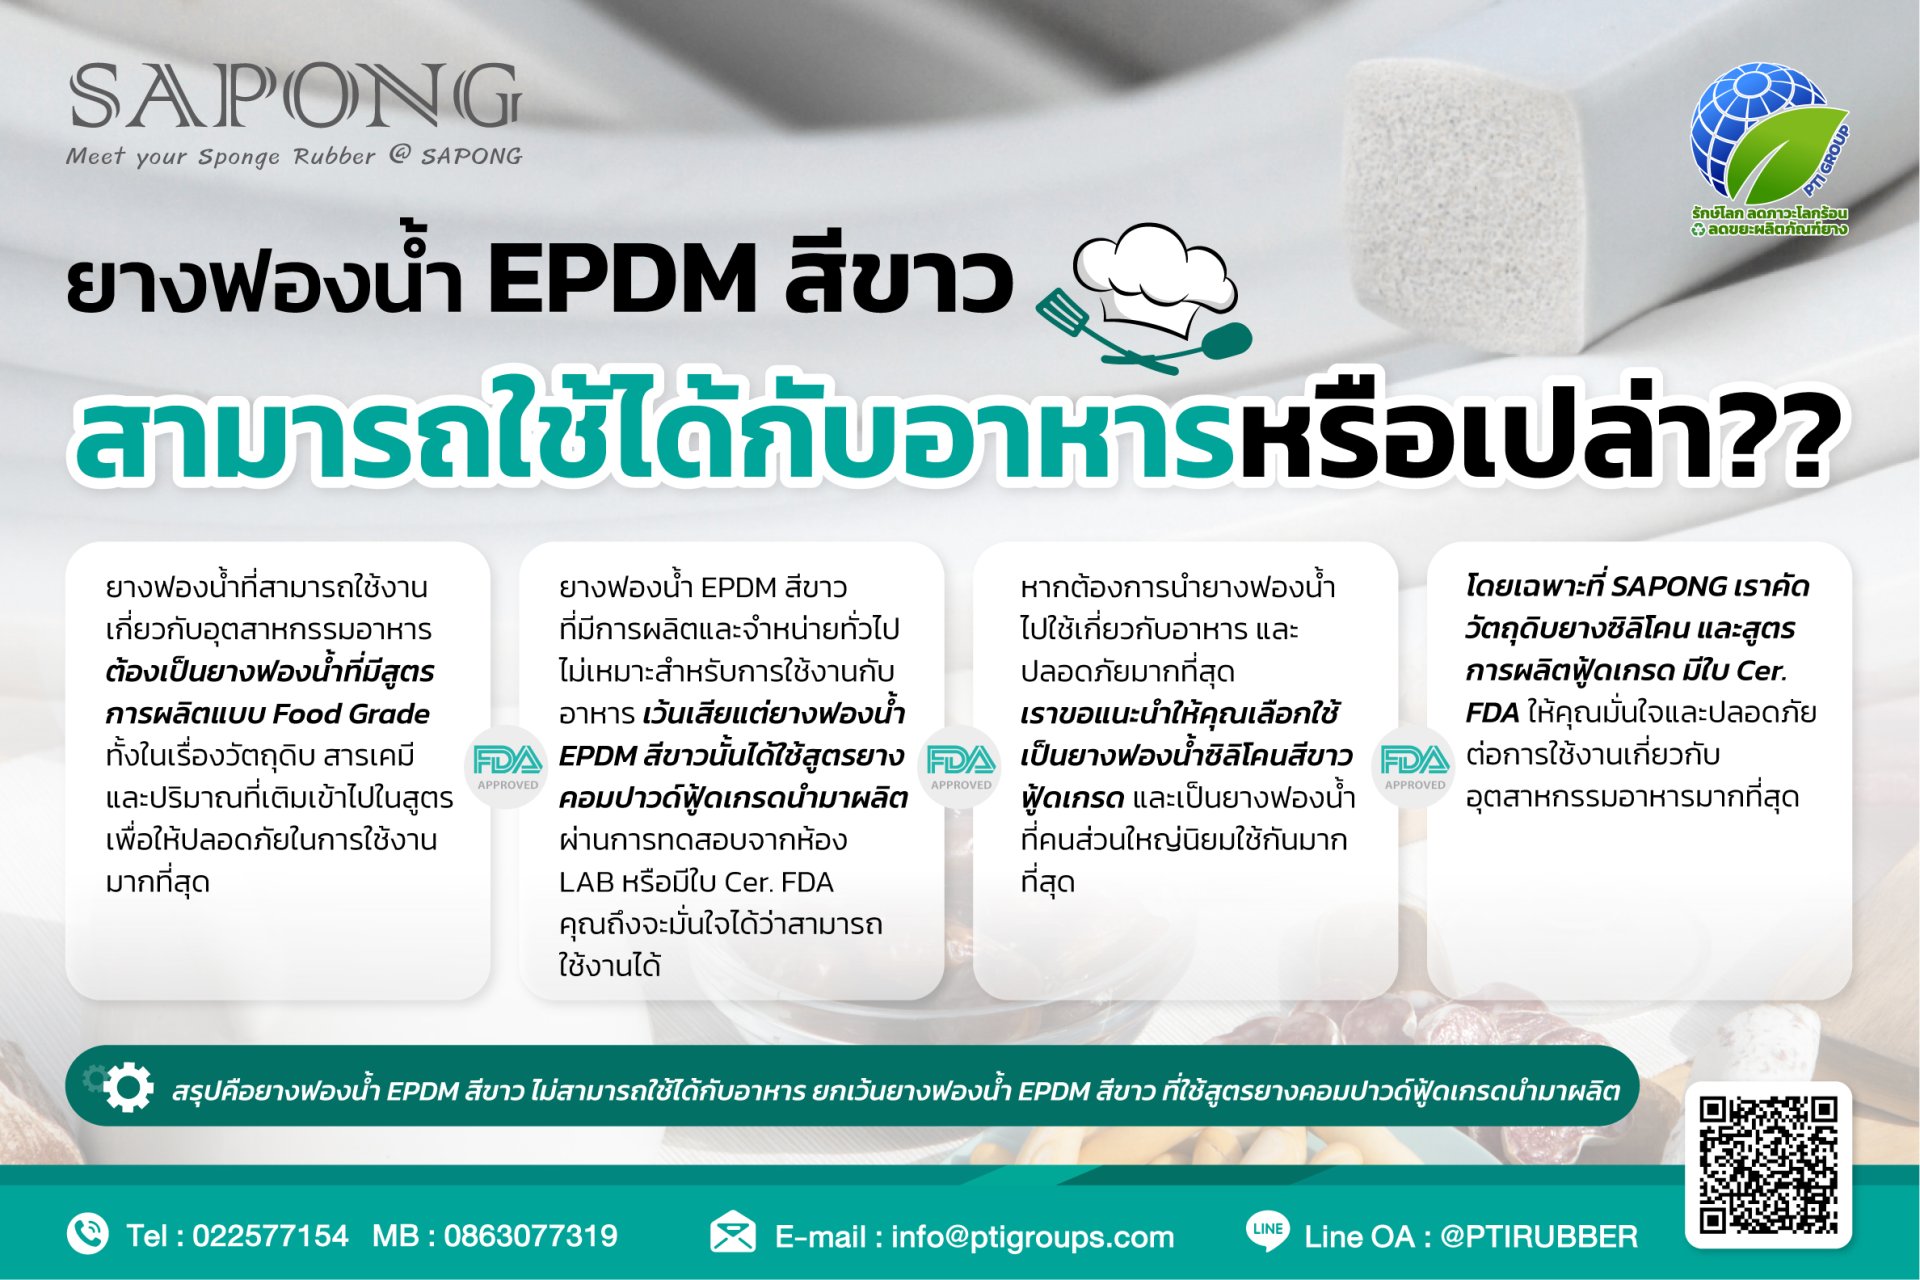 ยางฟองน้ำ EPDM สีขาว สามารถใช้ได้กับอาหารหรือเปล่า??